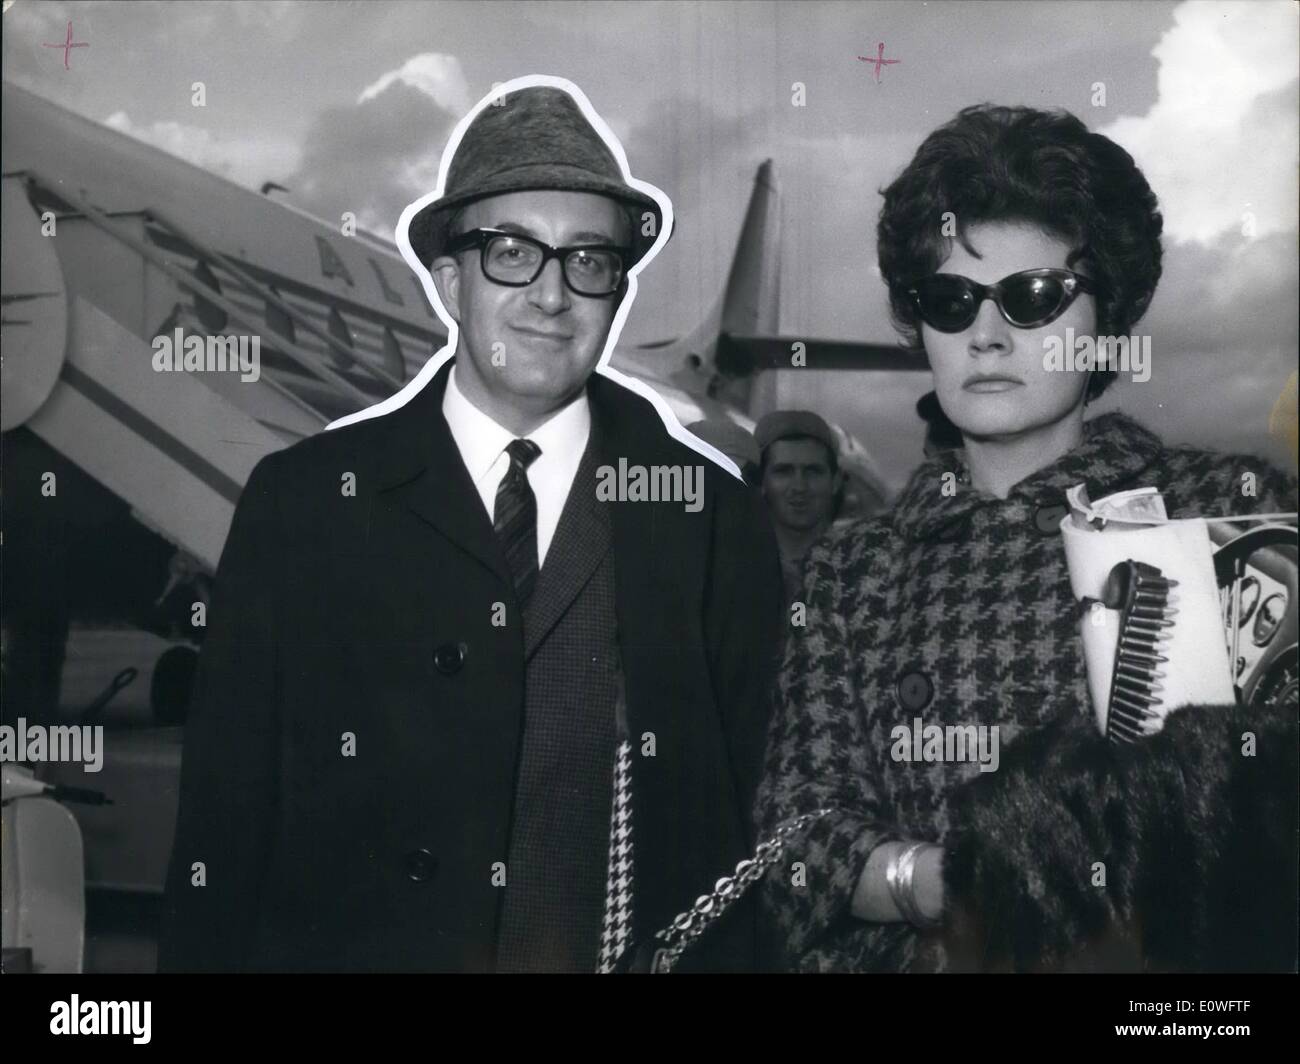 11 novembre 1962 - Le célèbre acteur anglais Peter Sellers est arrivé aujourd'hui à Rome pour prendre son rôle dans le film réalisé par Blake Edwards ''Pinke Panther'' ; Sellers était accompagné de l'actrice américaine Polly Bergen de Hollywood qui sera dans le casting du film aussi. Banque D'Images